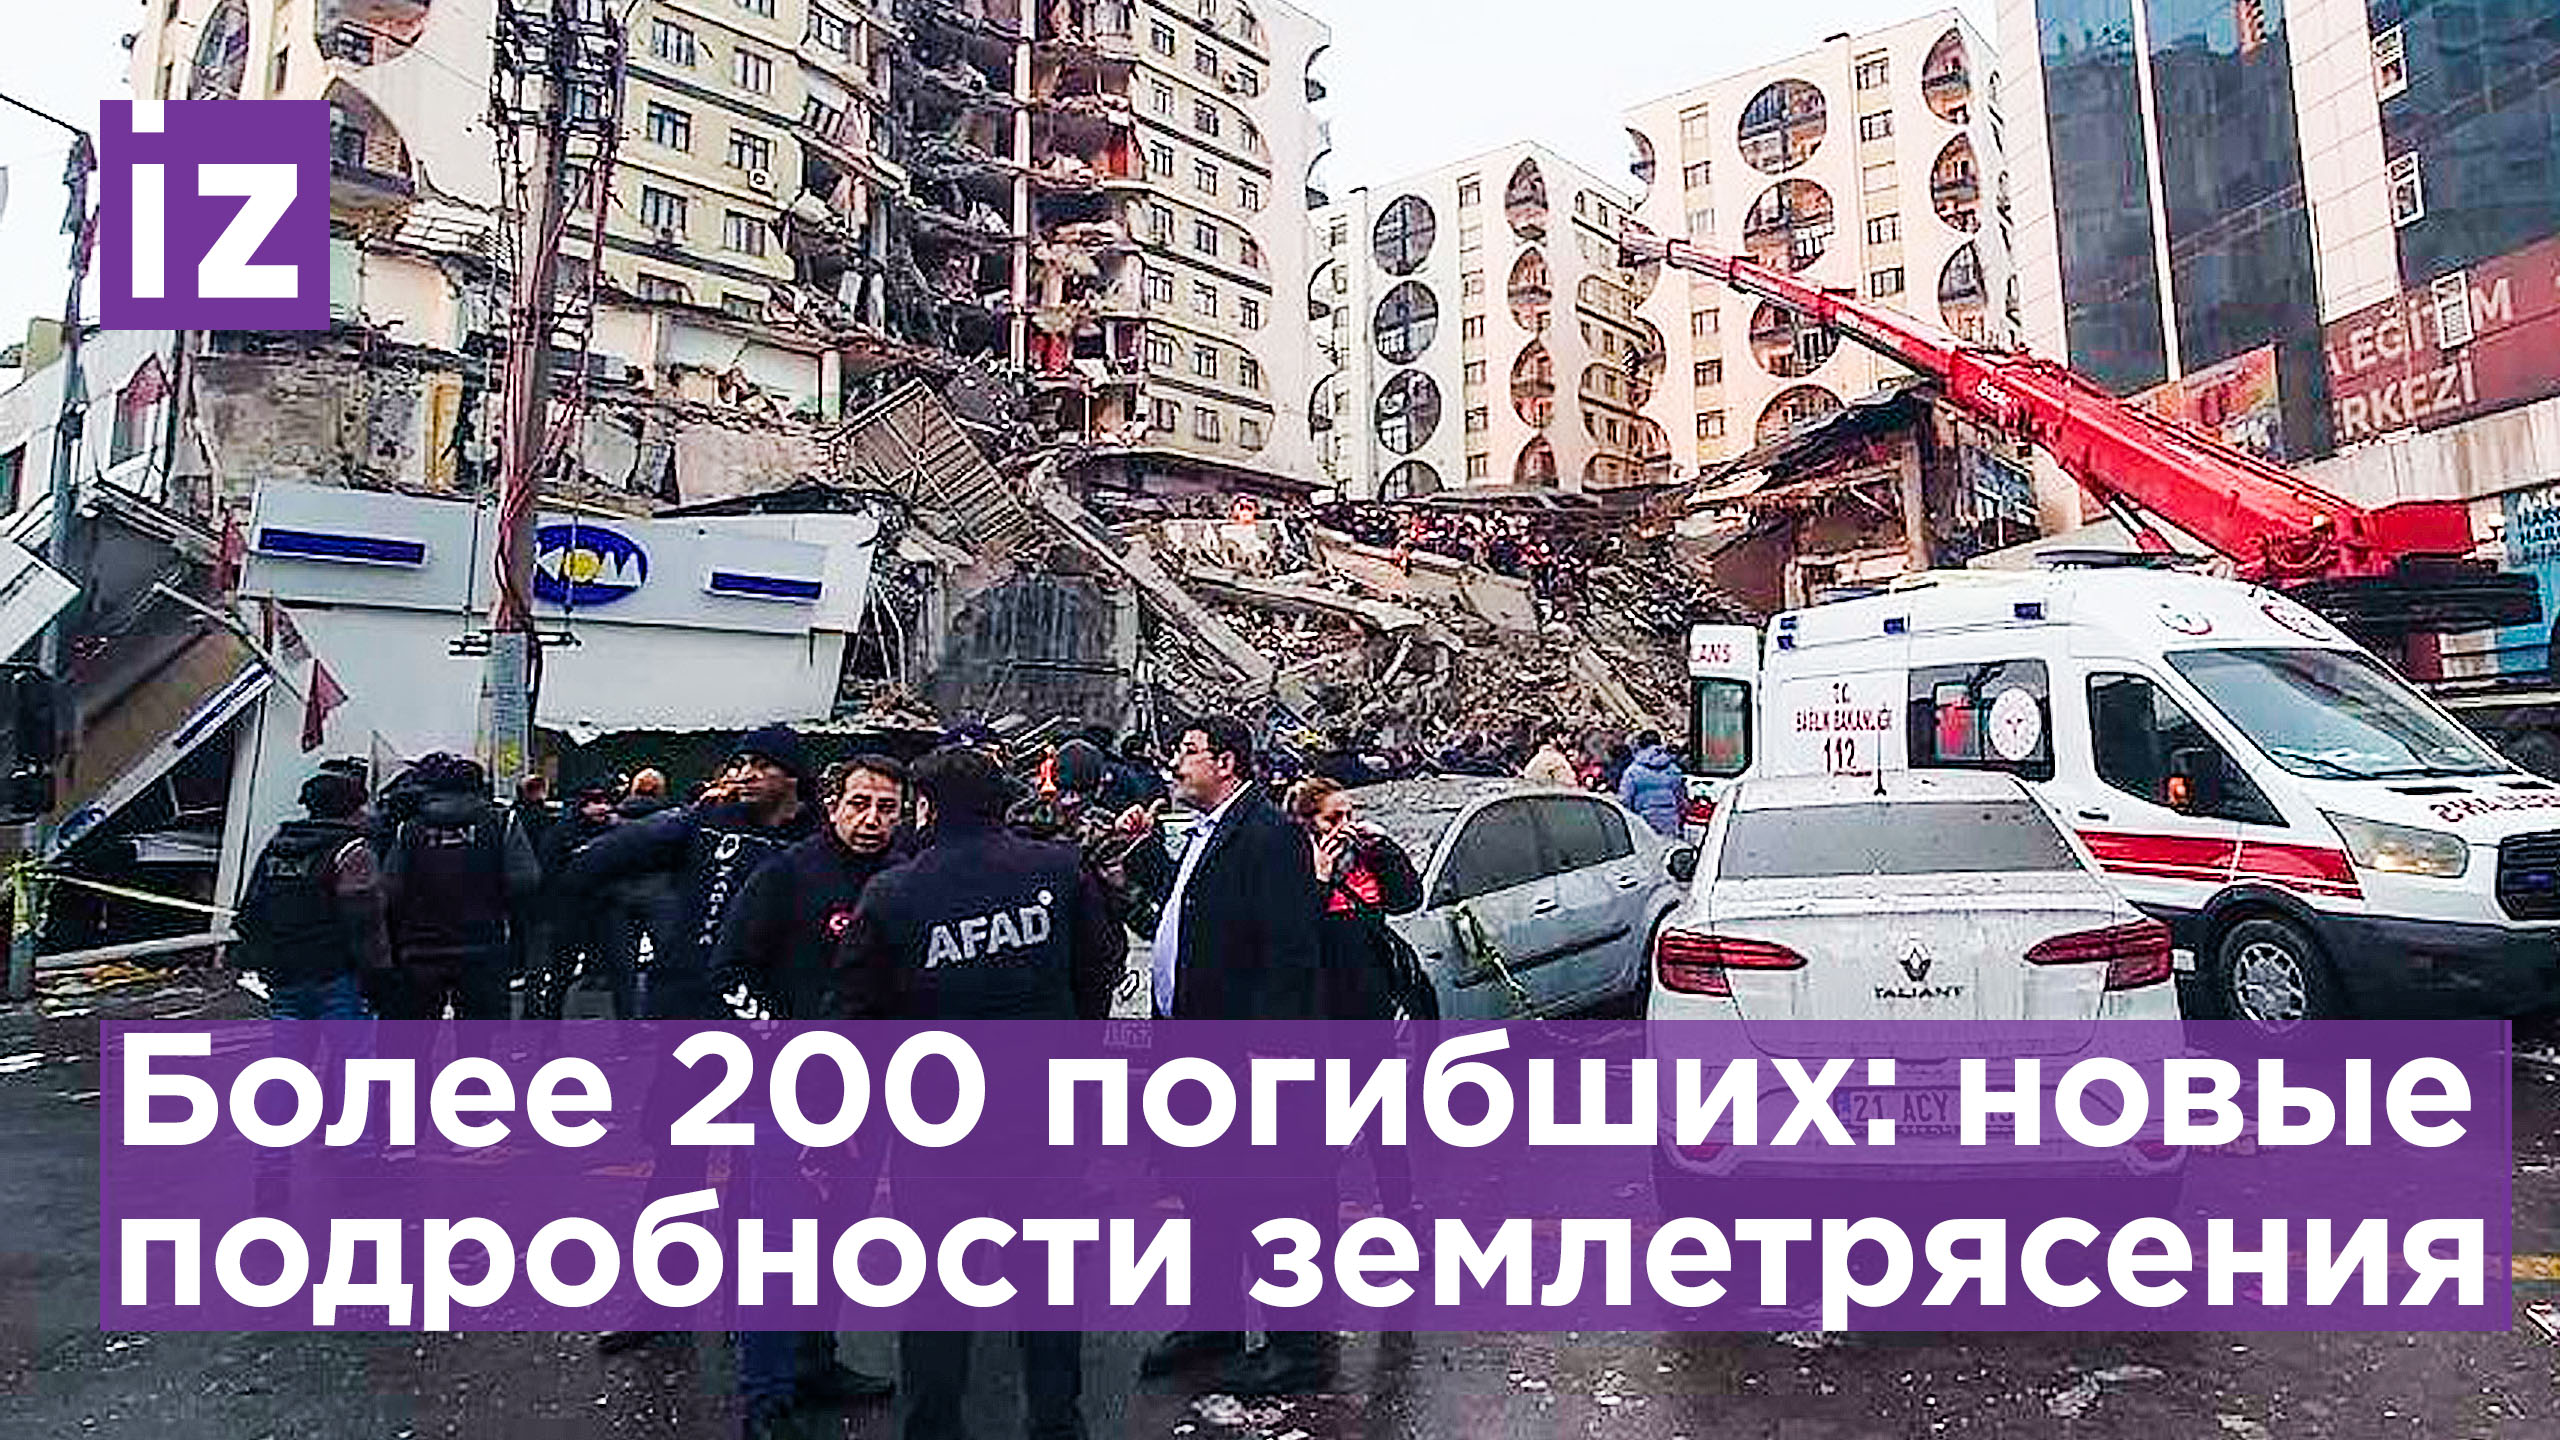 Более 200 погибших: подробности страшного землетрясения - в Турции высокий уровень угрозы/ Известия